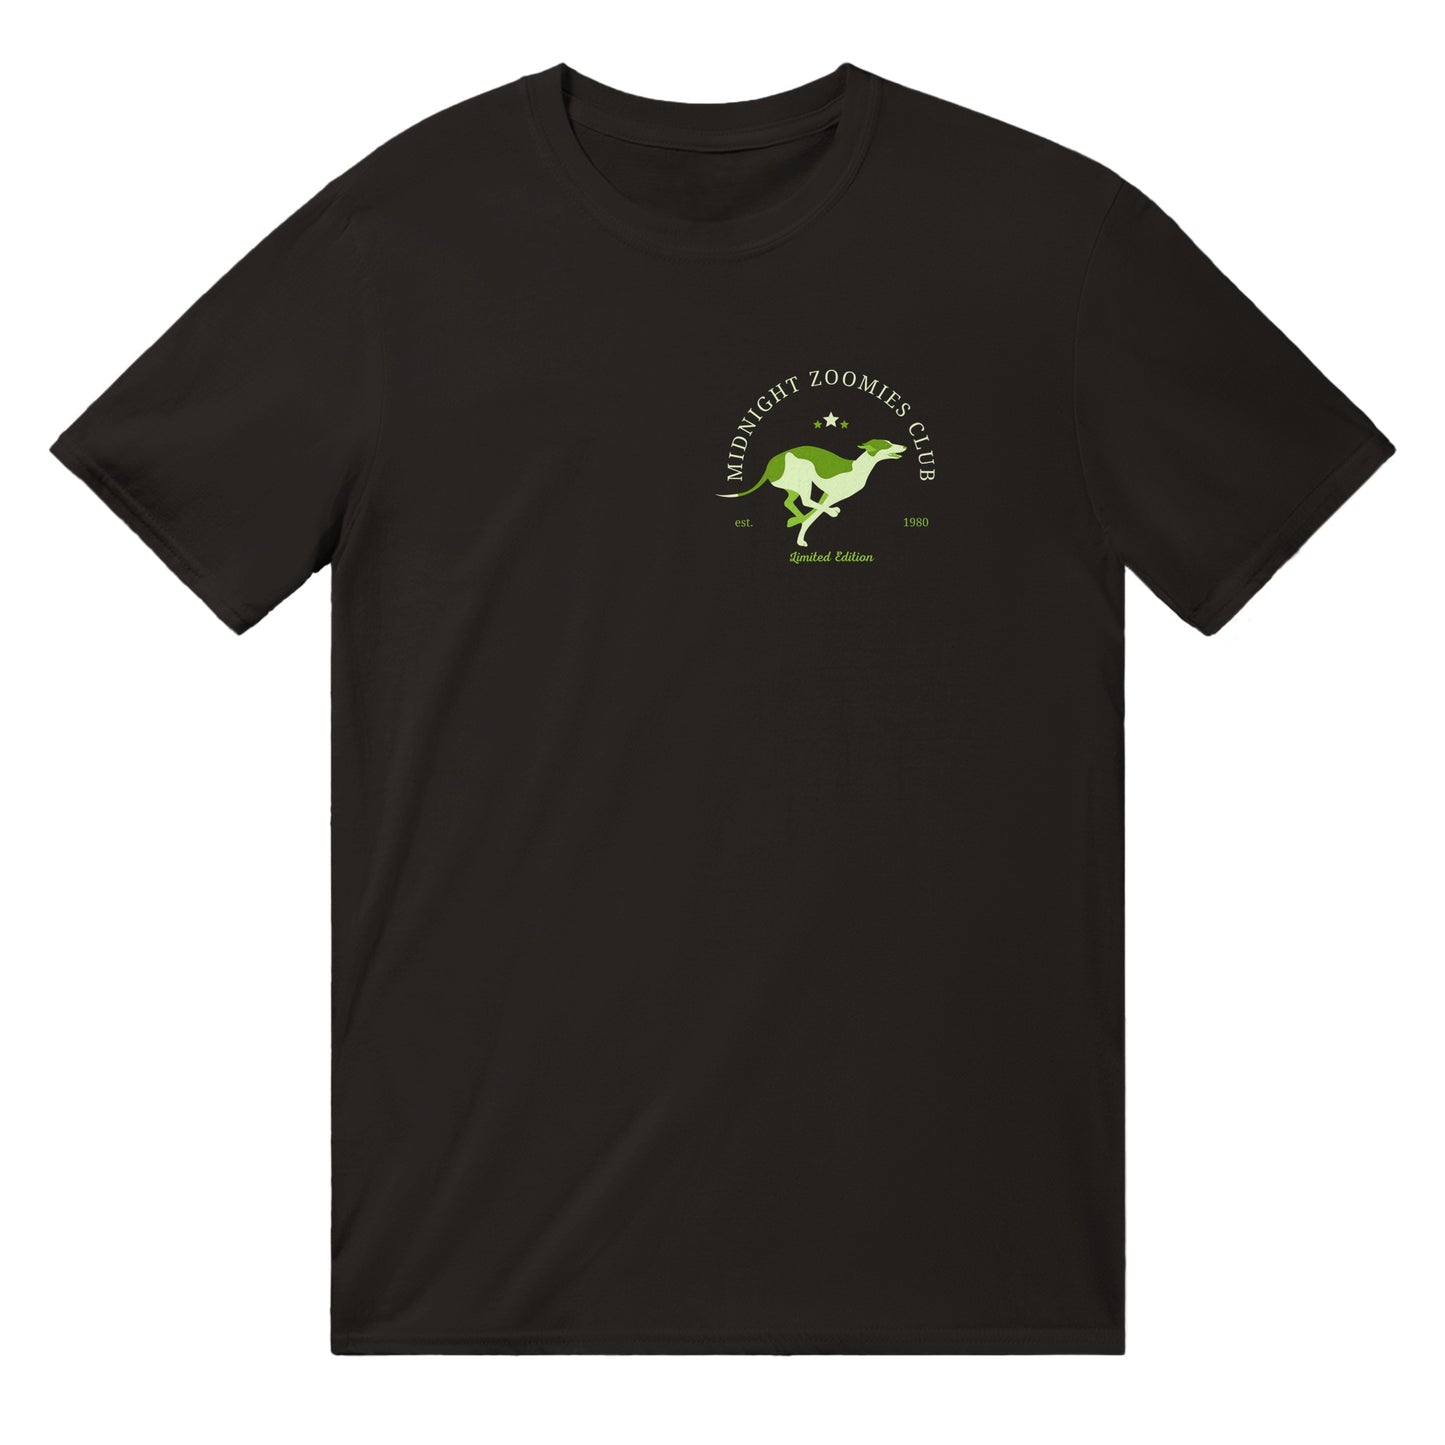 Zoomies Crewneck T-shirt